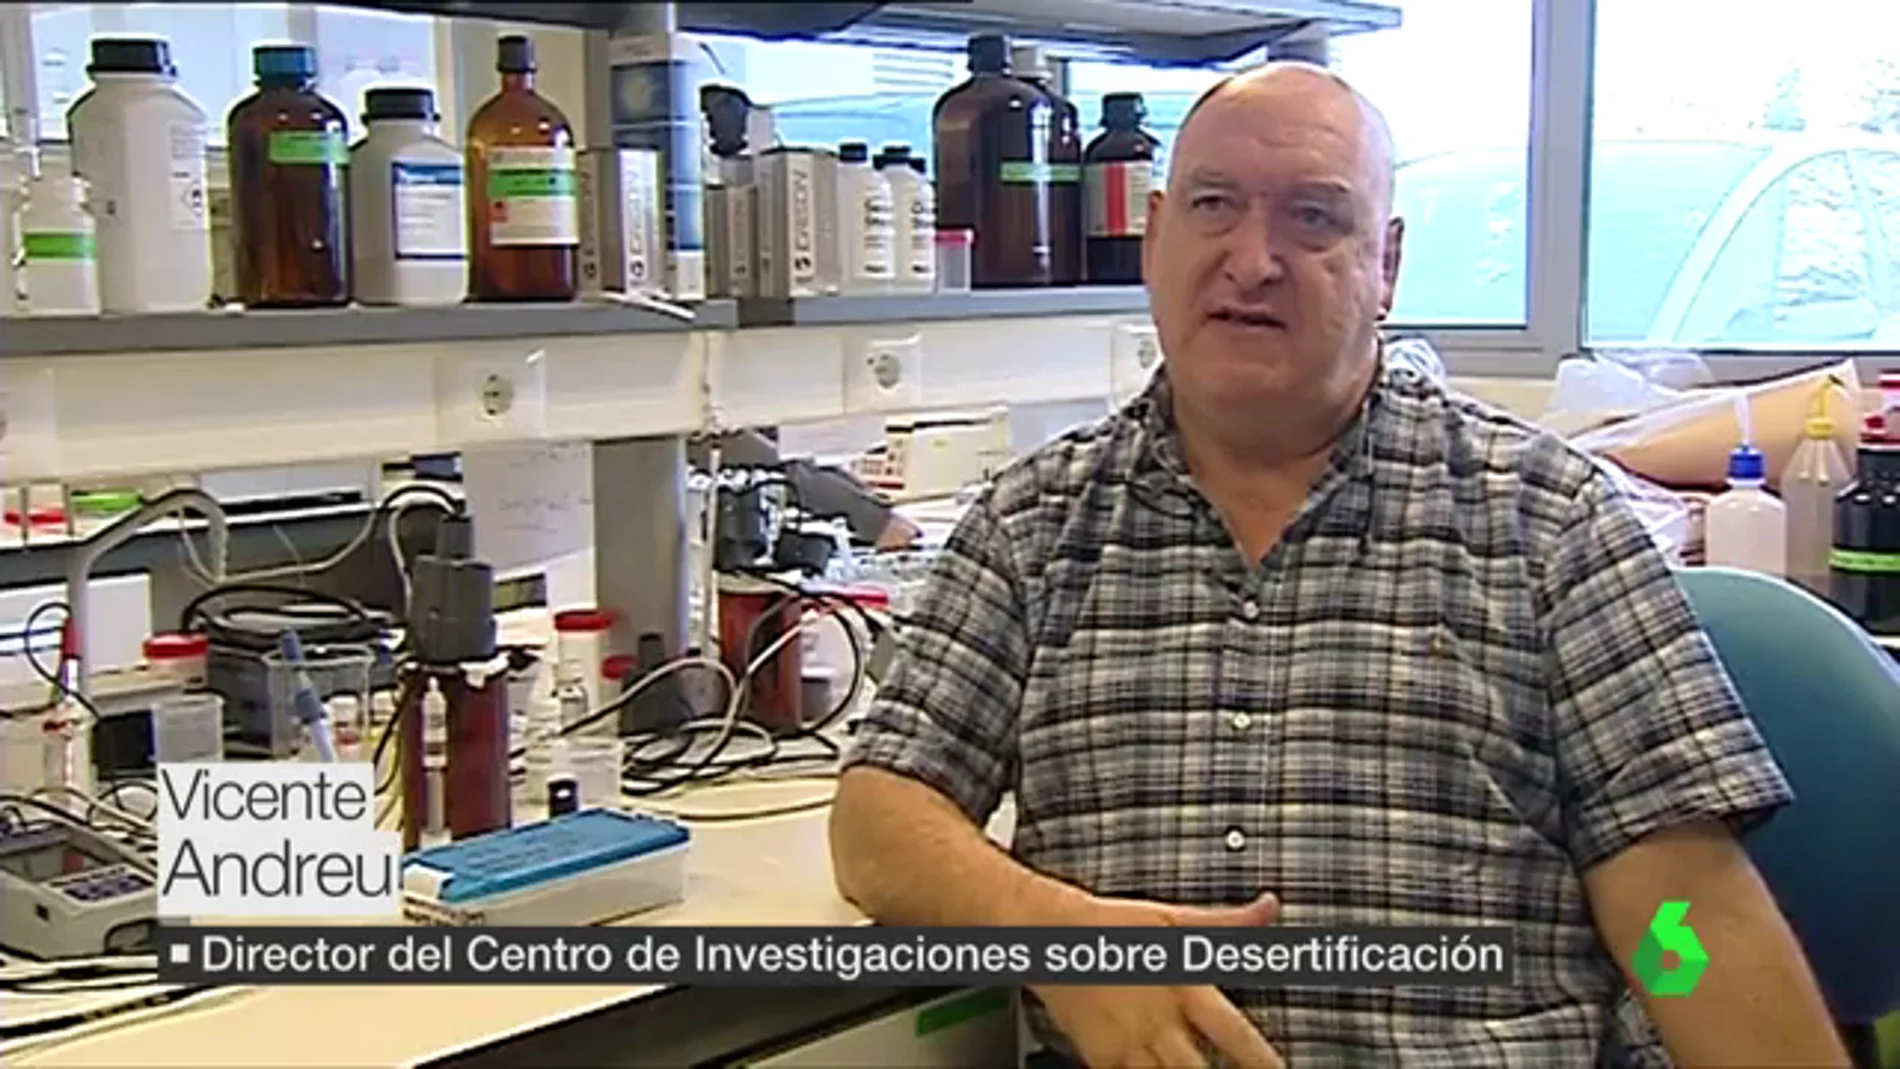 Vicente Andreu, director del centro de investigaciones sobre desertificación